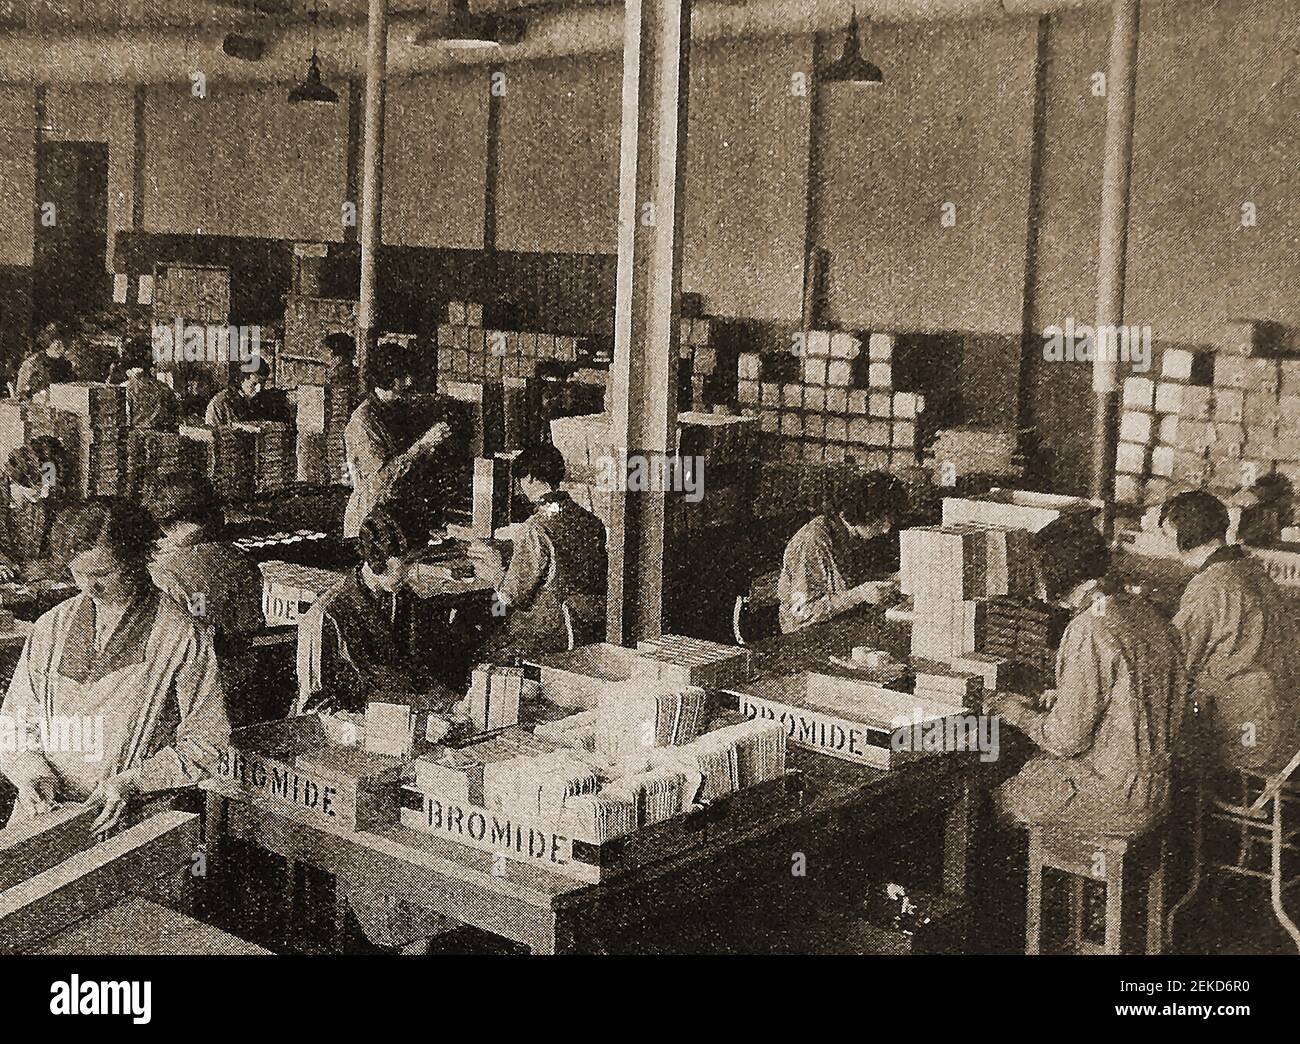 Ein frühes Pressefoto, auf dem Arbeiter in der Kodak Camera Factory in Harrow, London, England, Fotopapiere verpackten.The Kodak Works, Harrow, war ein Forschungs- und Entwicklungszentrum für Fotoproduktion am Grabstone Drive, Harrow, North West London.die Laborabteilung in Harrow wurde 1929 eröffnet und zum europäischen Forschungszentrum von Kodak. Stockfoto